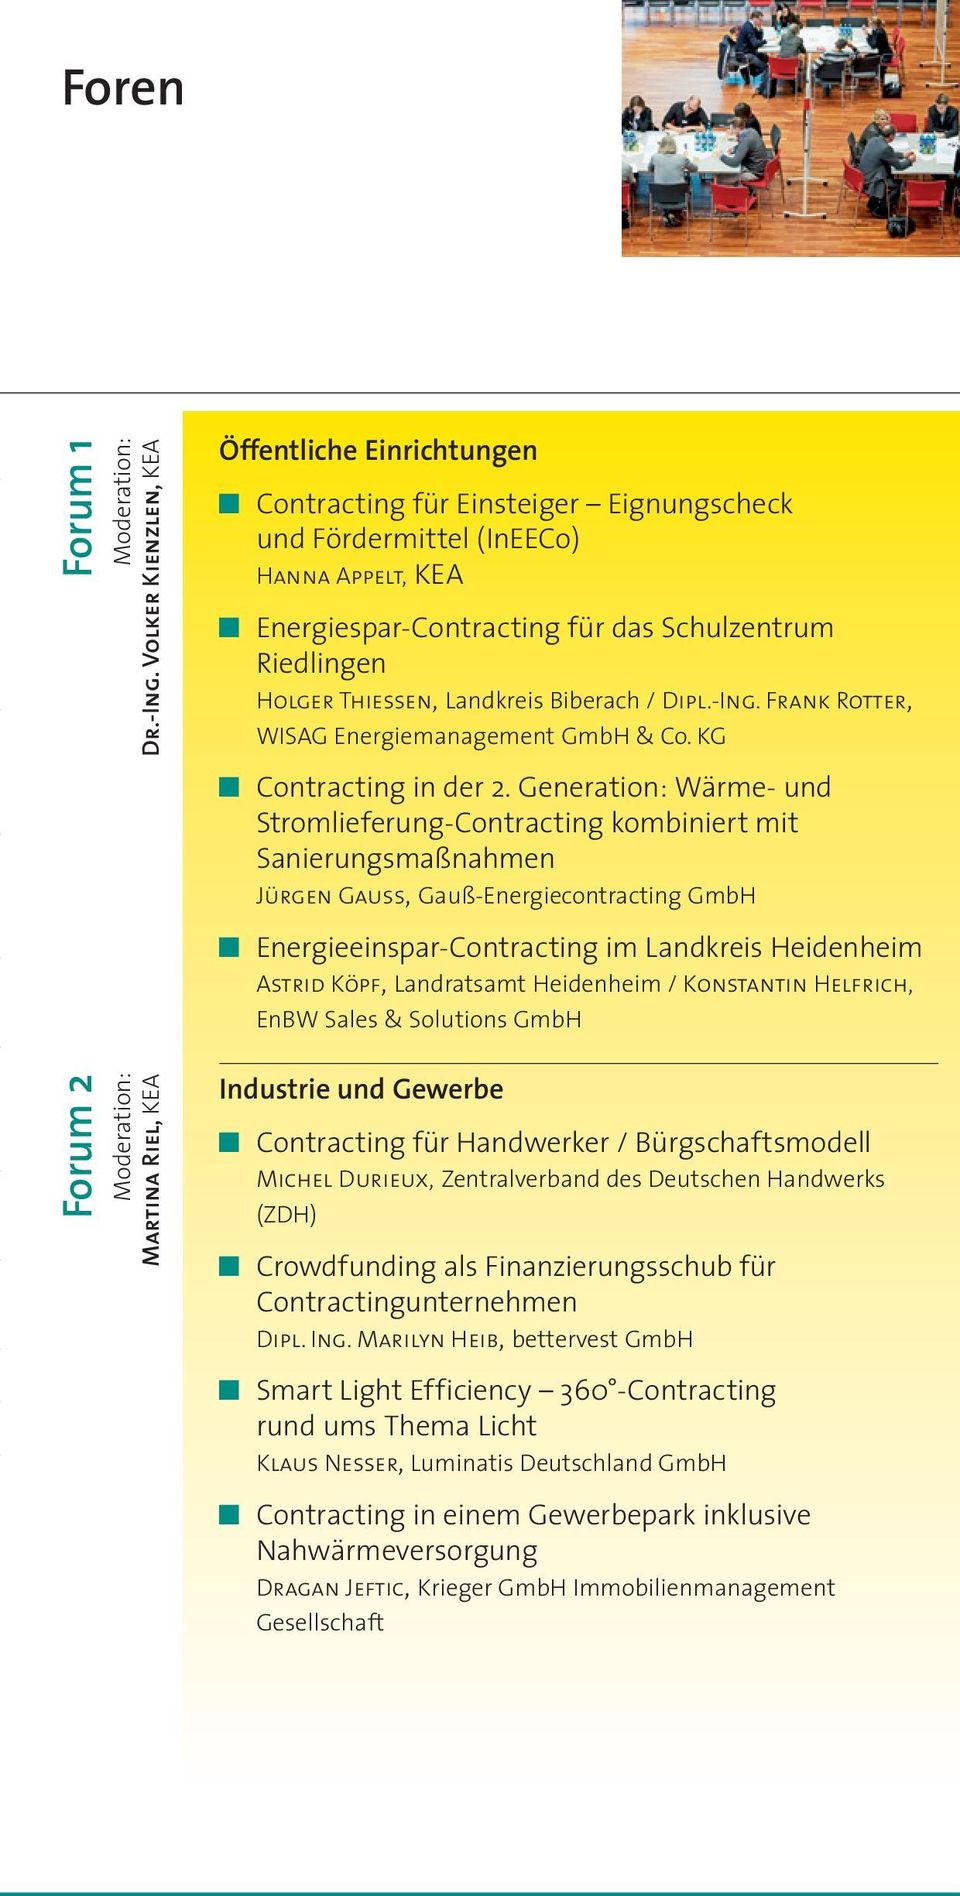 Thiessen, Landkreis Biberach / Dipl.-Ing. Frank Rotter, WISAG Energiemanagement GmbH & Co. KG 5 Contracting in der 2.